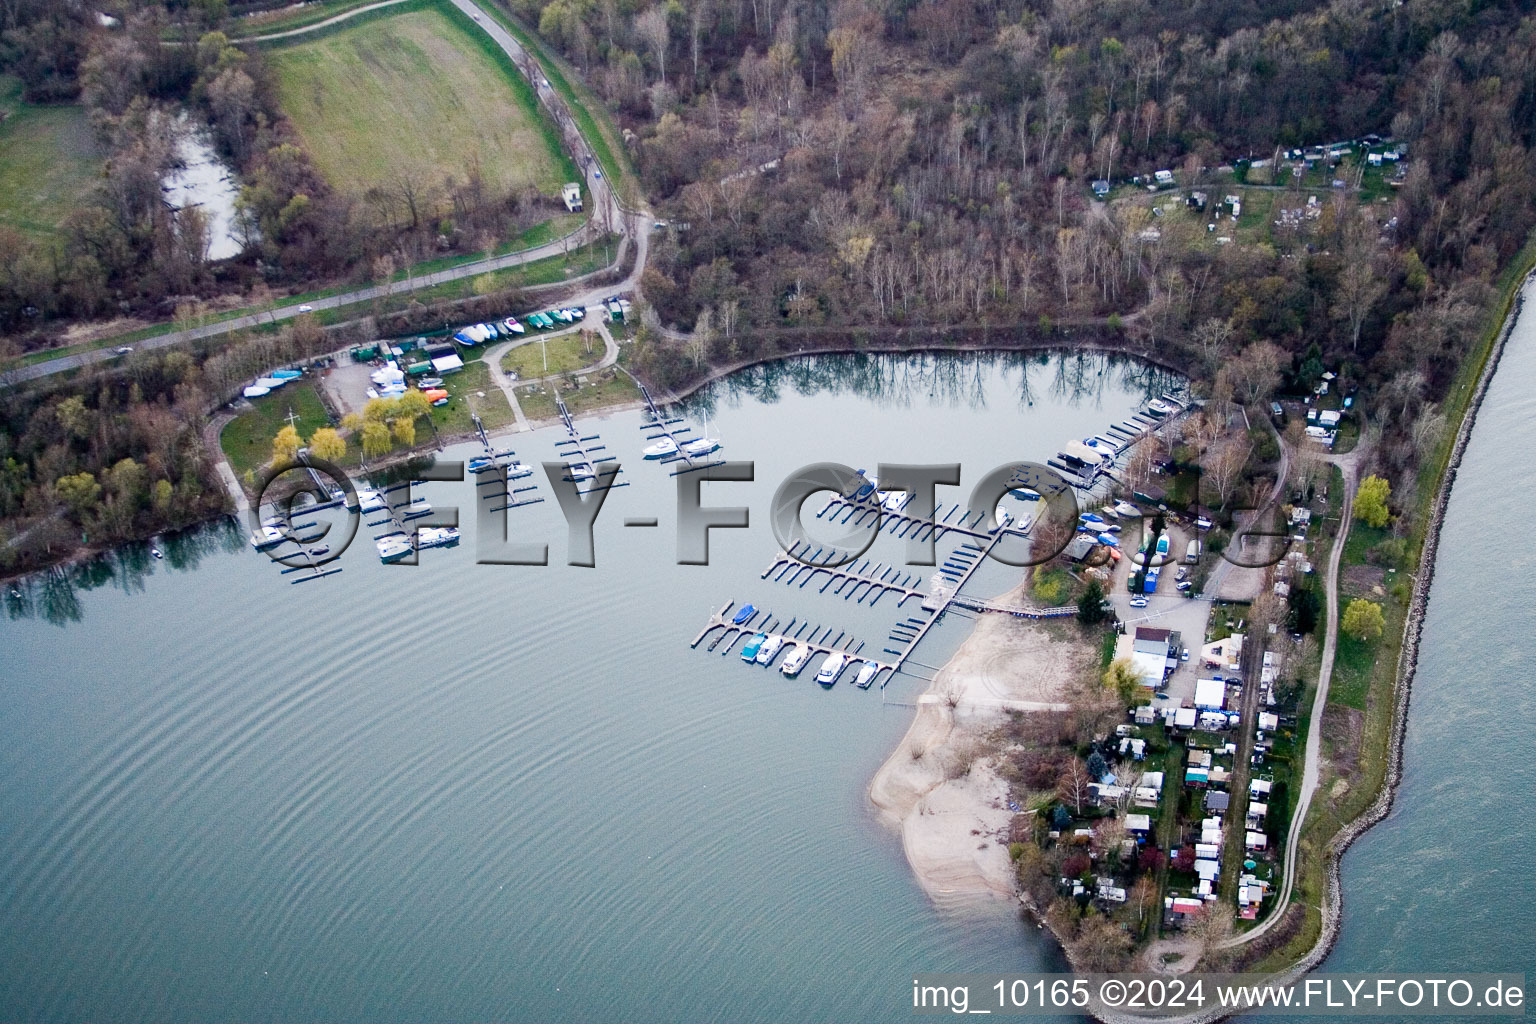 Lacs et zones riveraines avec campings et résidences de week-end dans la zone de loisirs Blaue Adria dans le district de Riedsiedlung à Altrip dans le département Rhénanie-Palatinat, Allemagne d'en haut